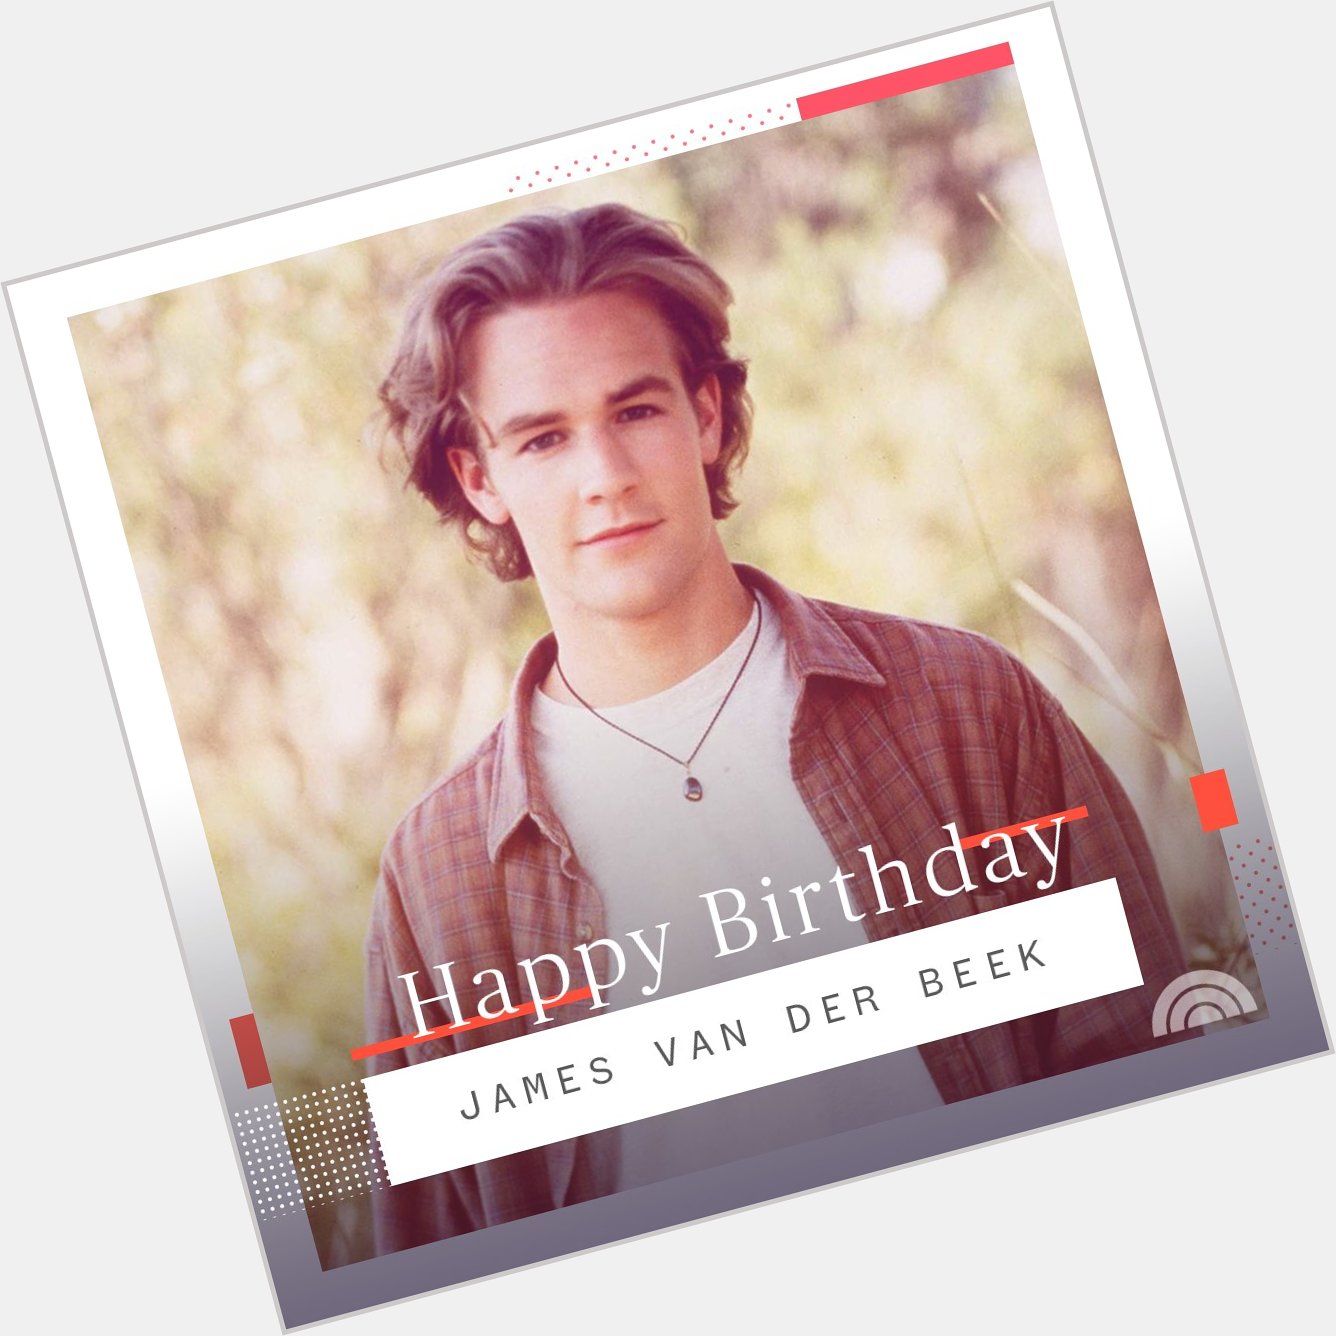 Happy birthday, James Van Der Beek!  